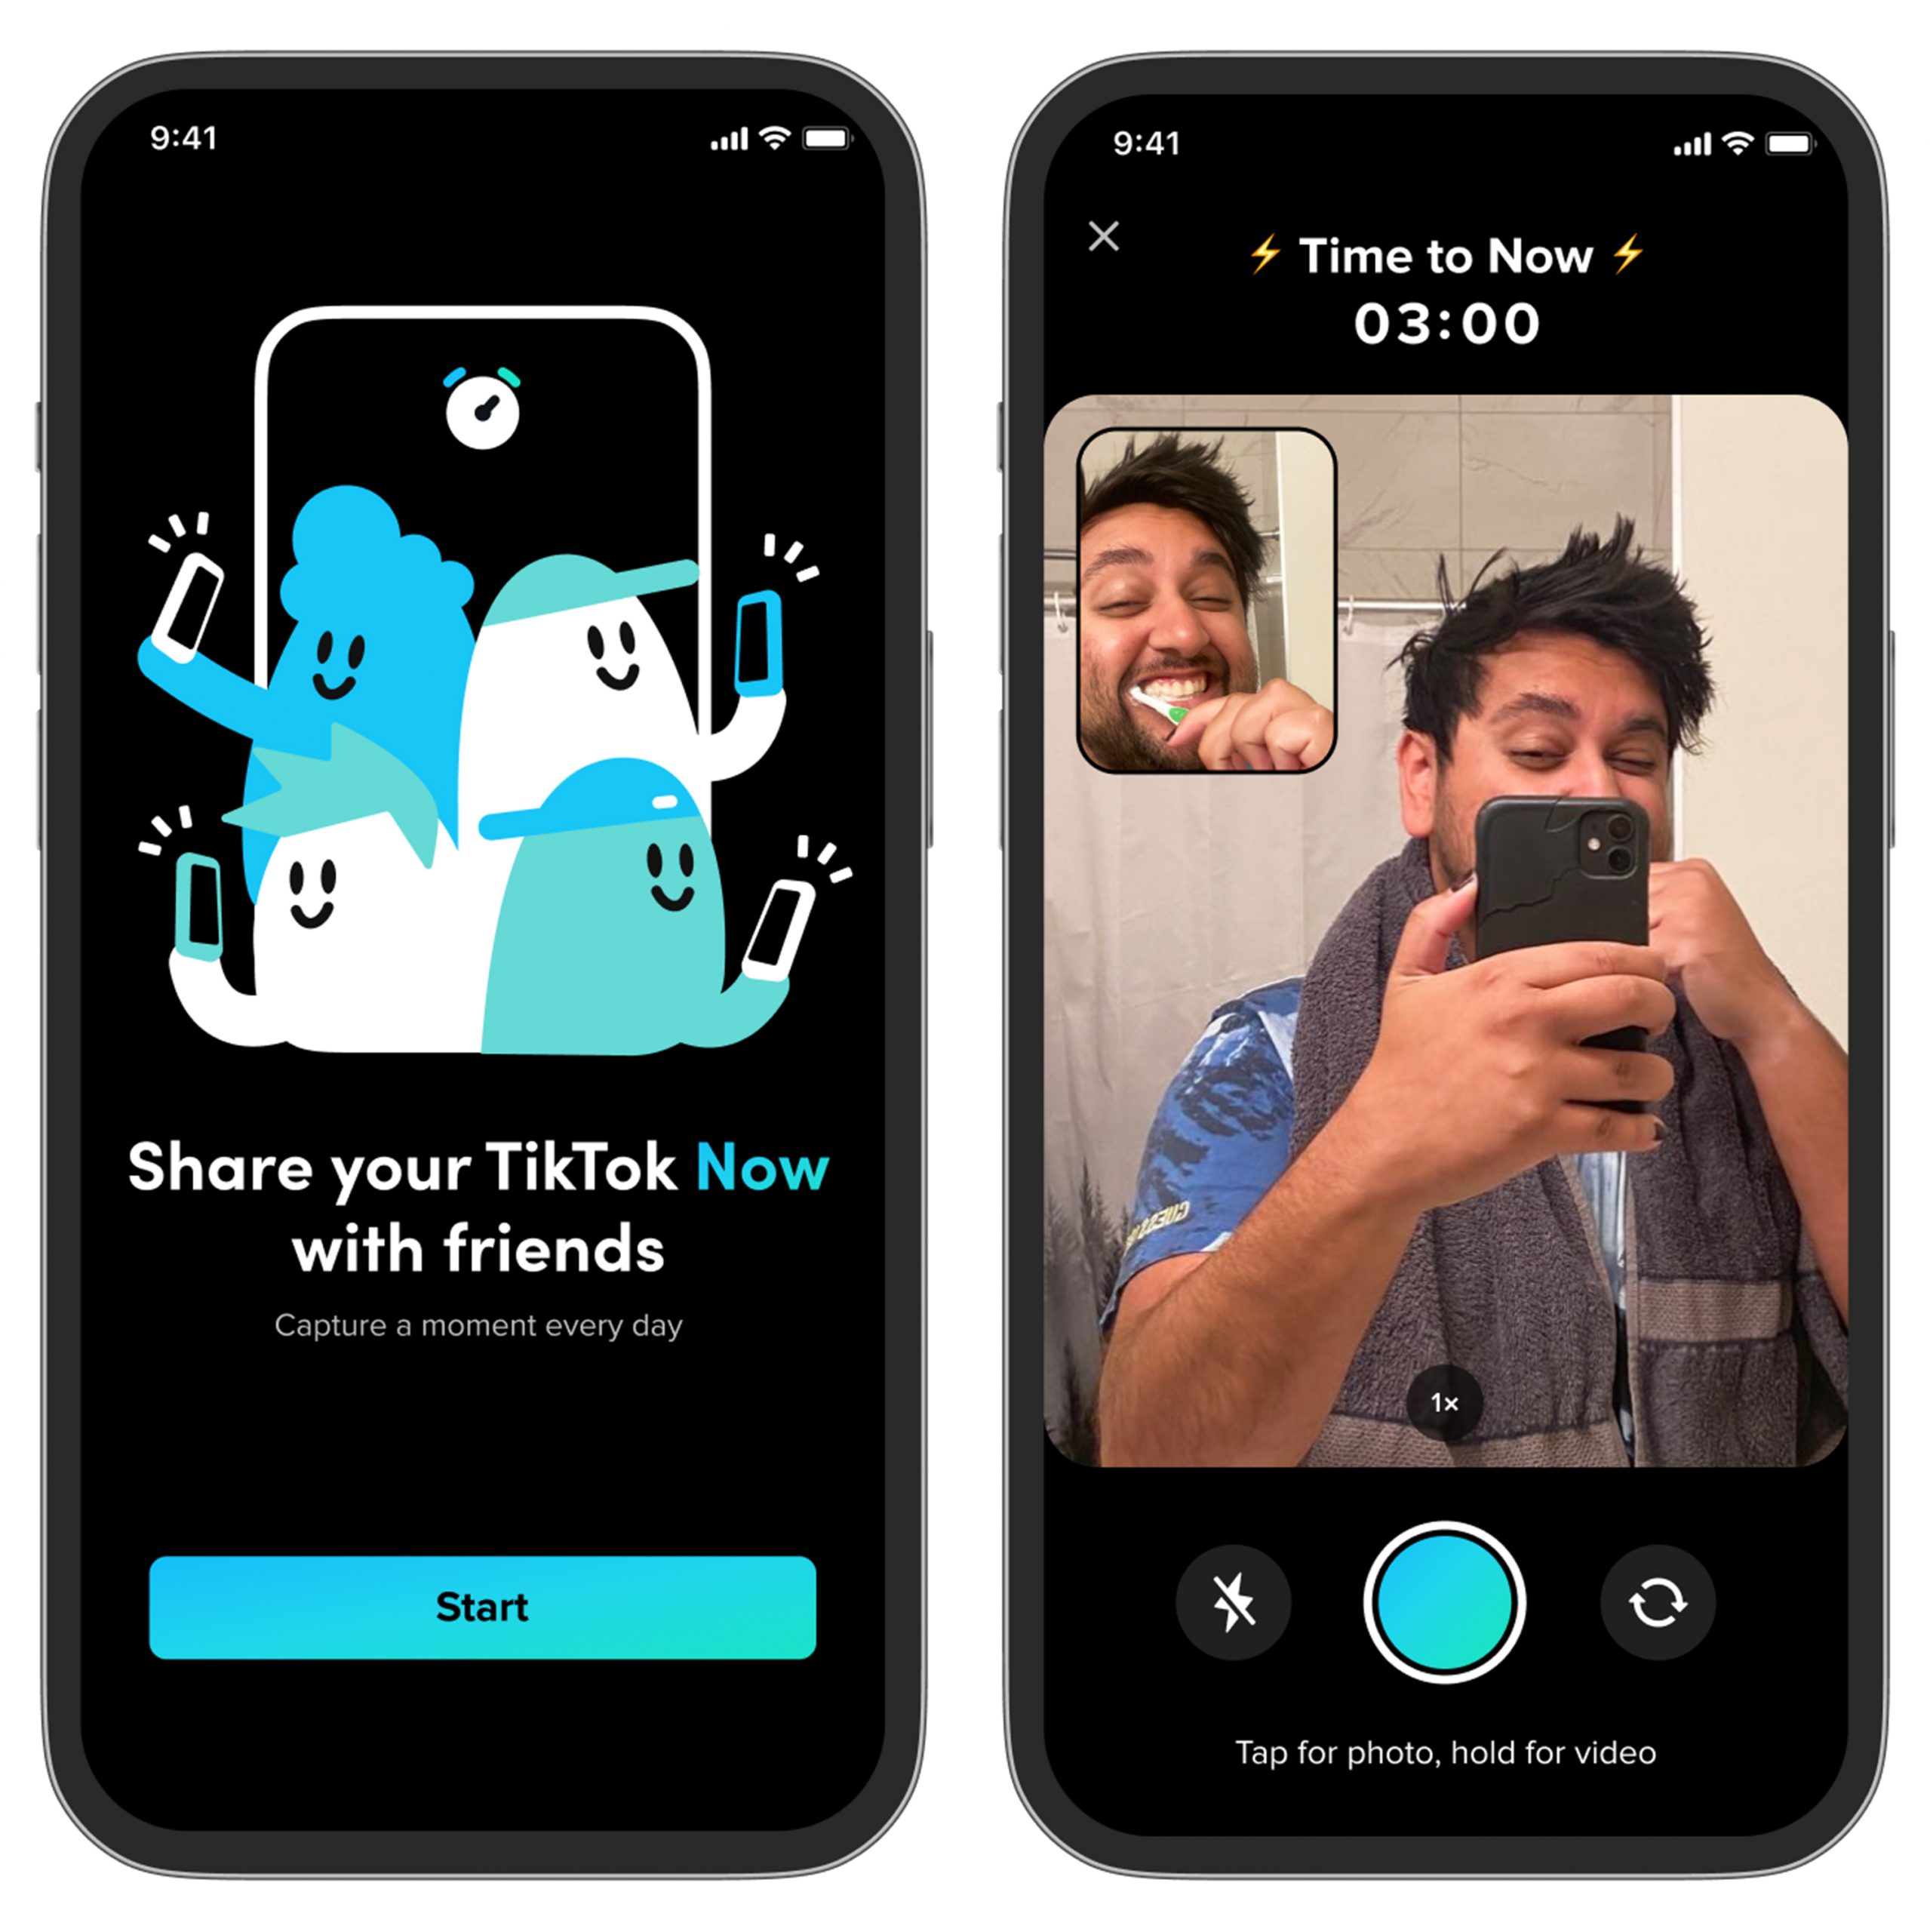 TikTok chính thức ra mắt TikTok Now - Công cụ mới hỗ trợ người dùng sáng tạo và kết nối